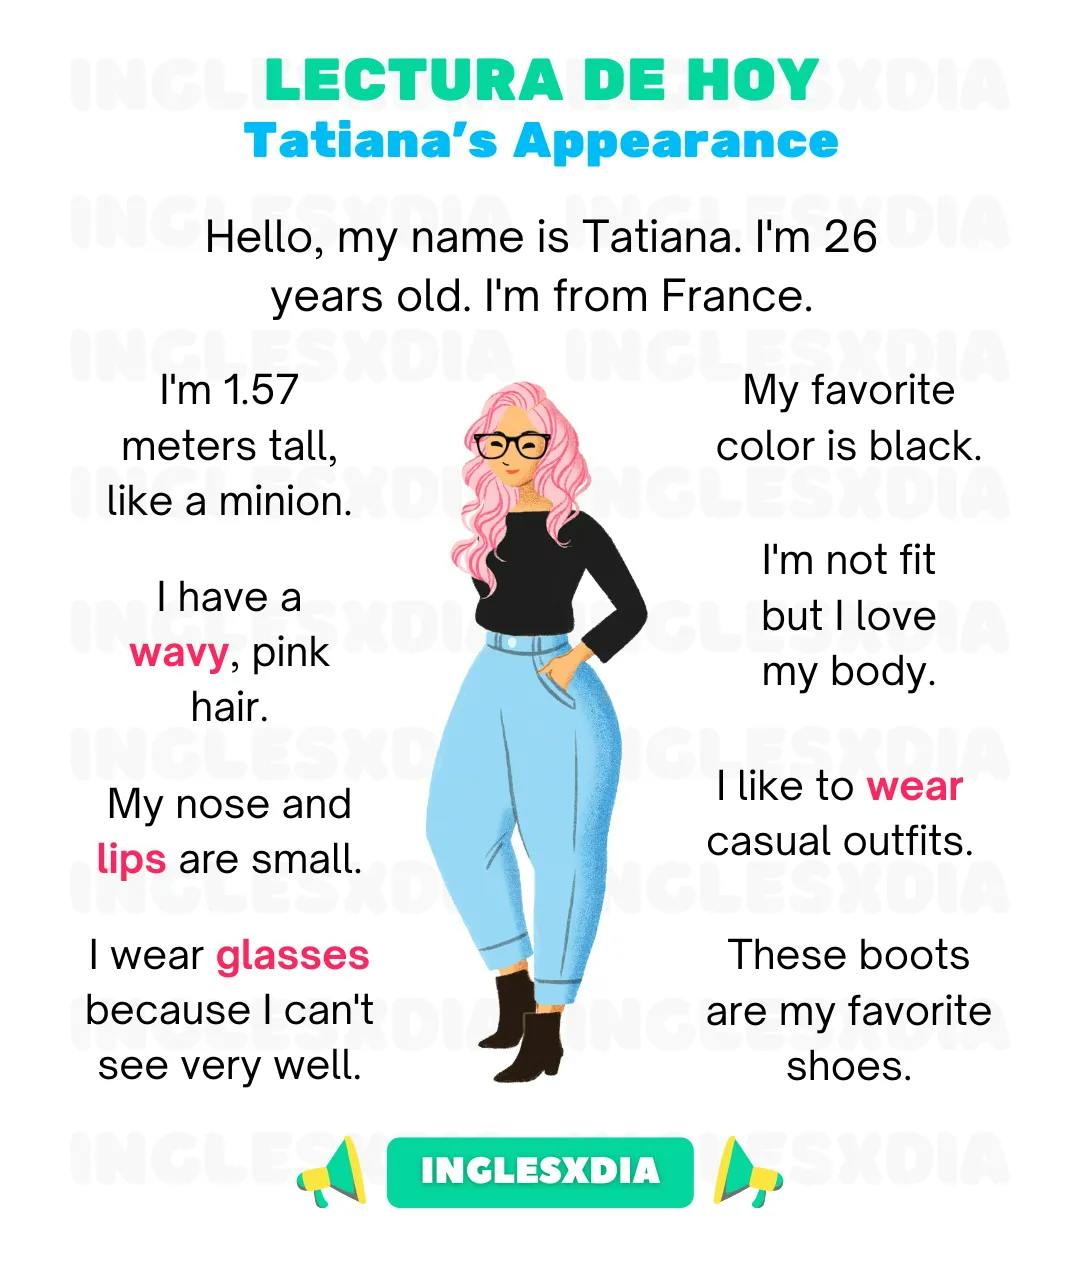 Tatiana's Appearance